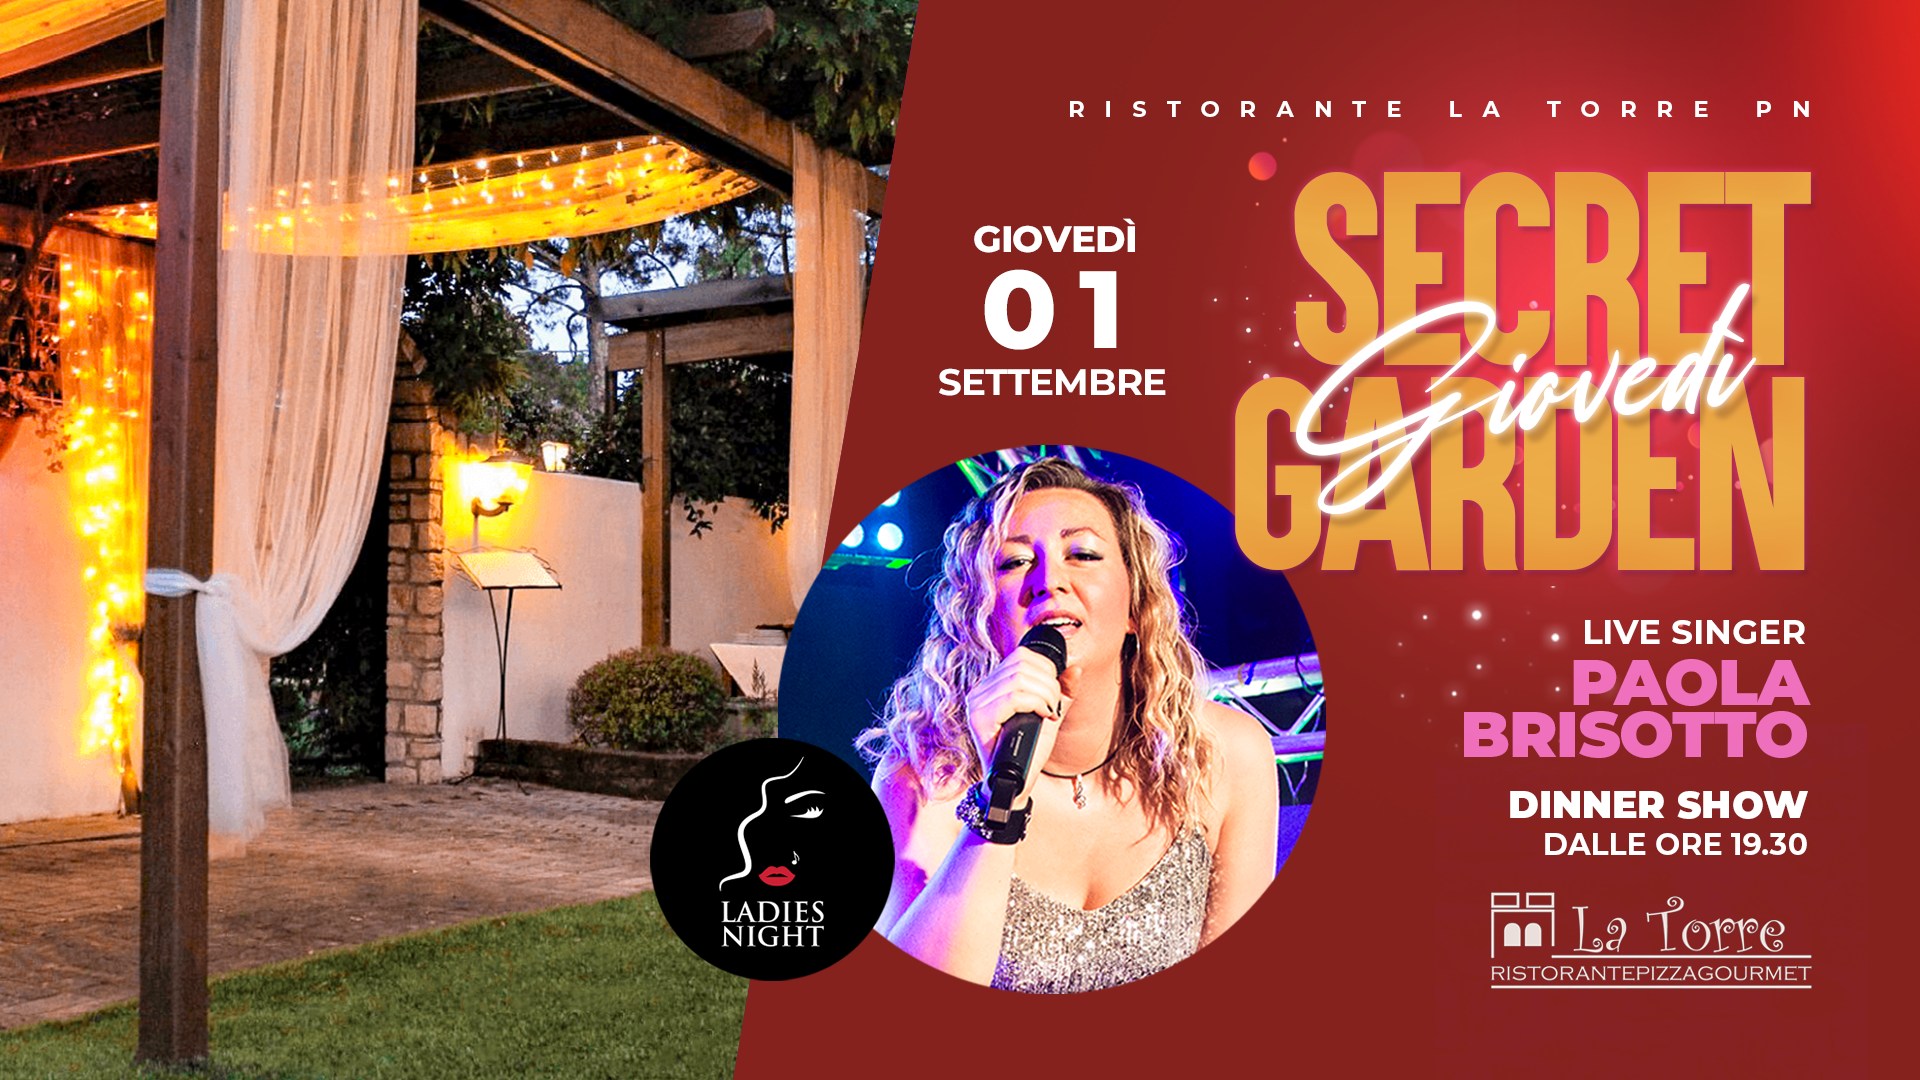 Secret Garden Dinner Show con Paola B • Ristorante La Torre, Pordenone